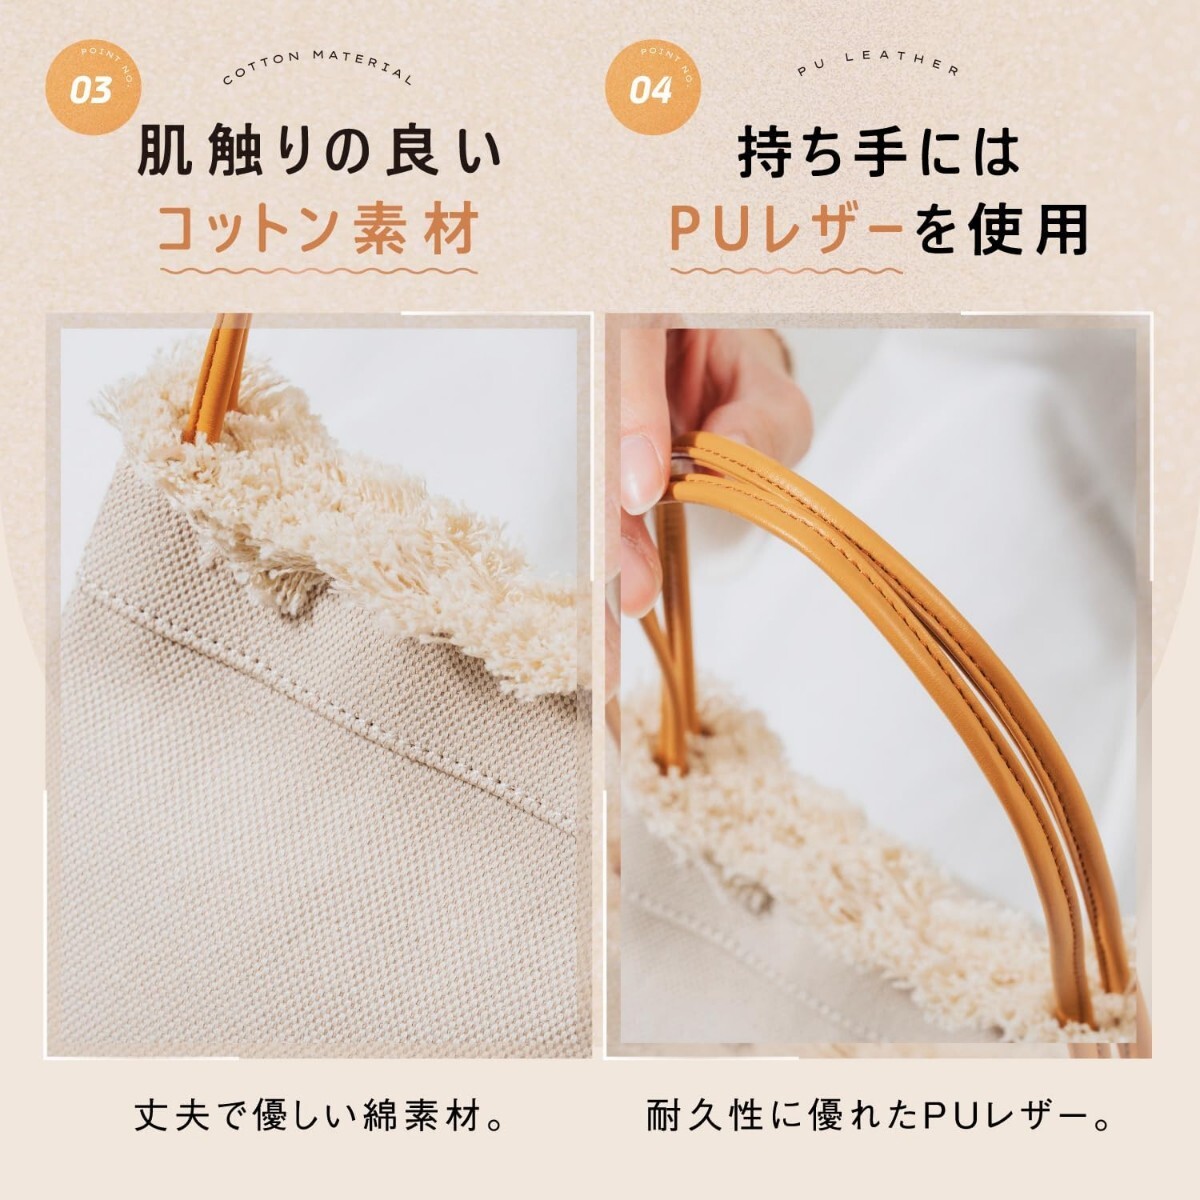  новый товар нераспечатанный * обычная цена 4,980 иен Brown цвет *MURA( пятно ) женский ручная сумочка парусина Mini большая сумка мини сумка 